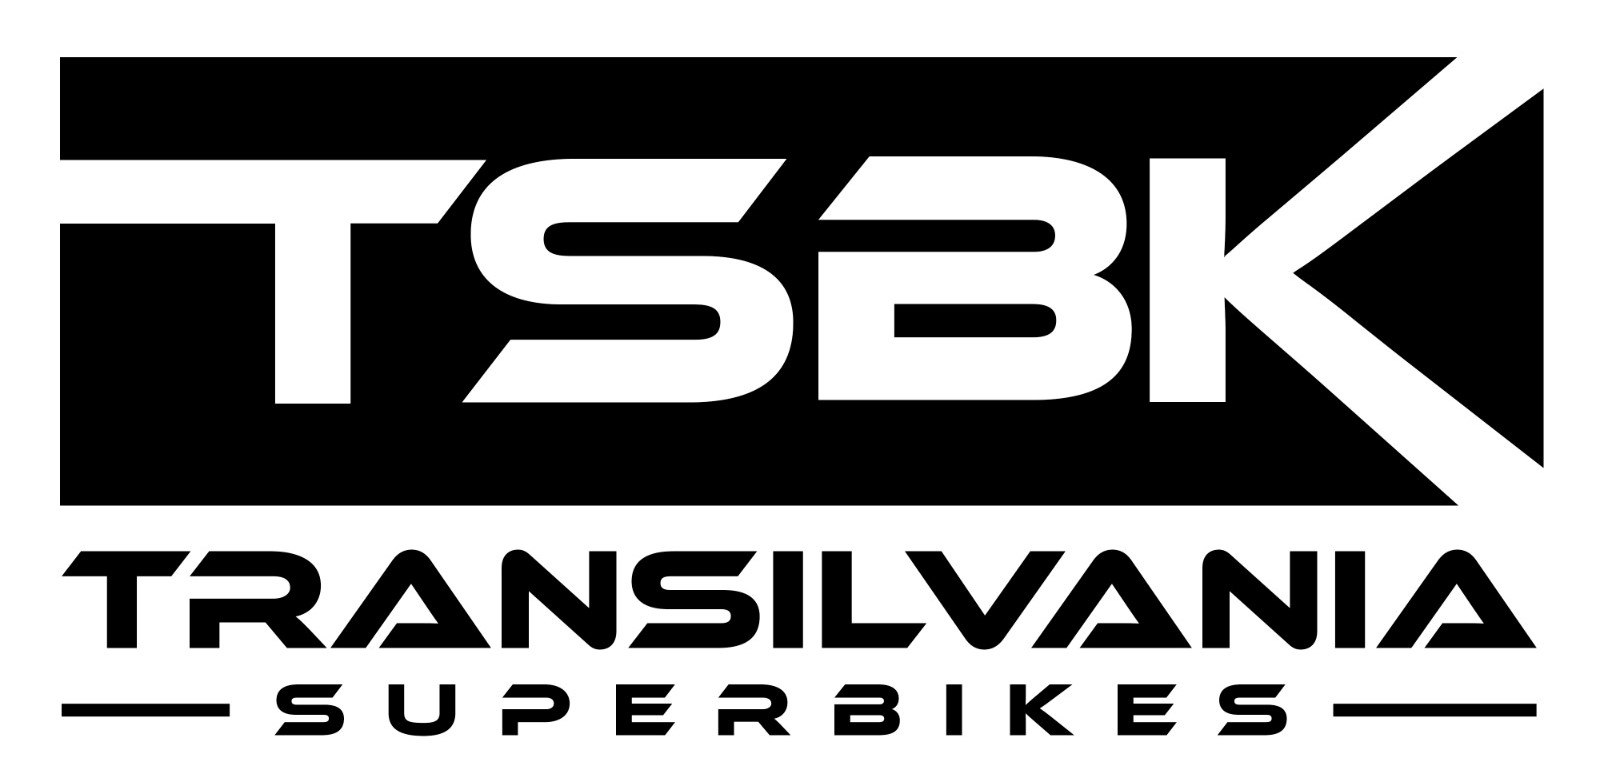 Asociația club sportiv Transilvania superbikes  logo